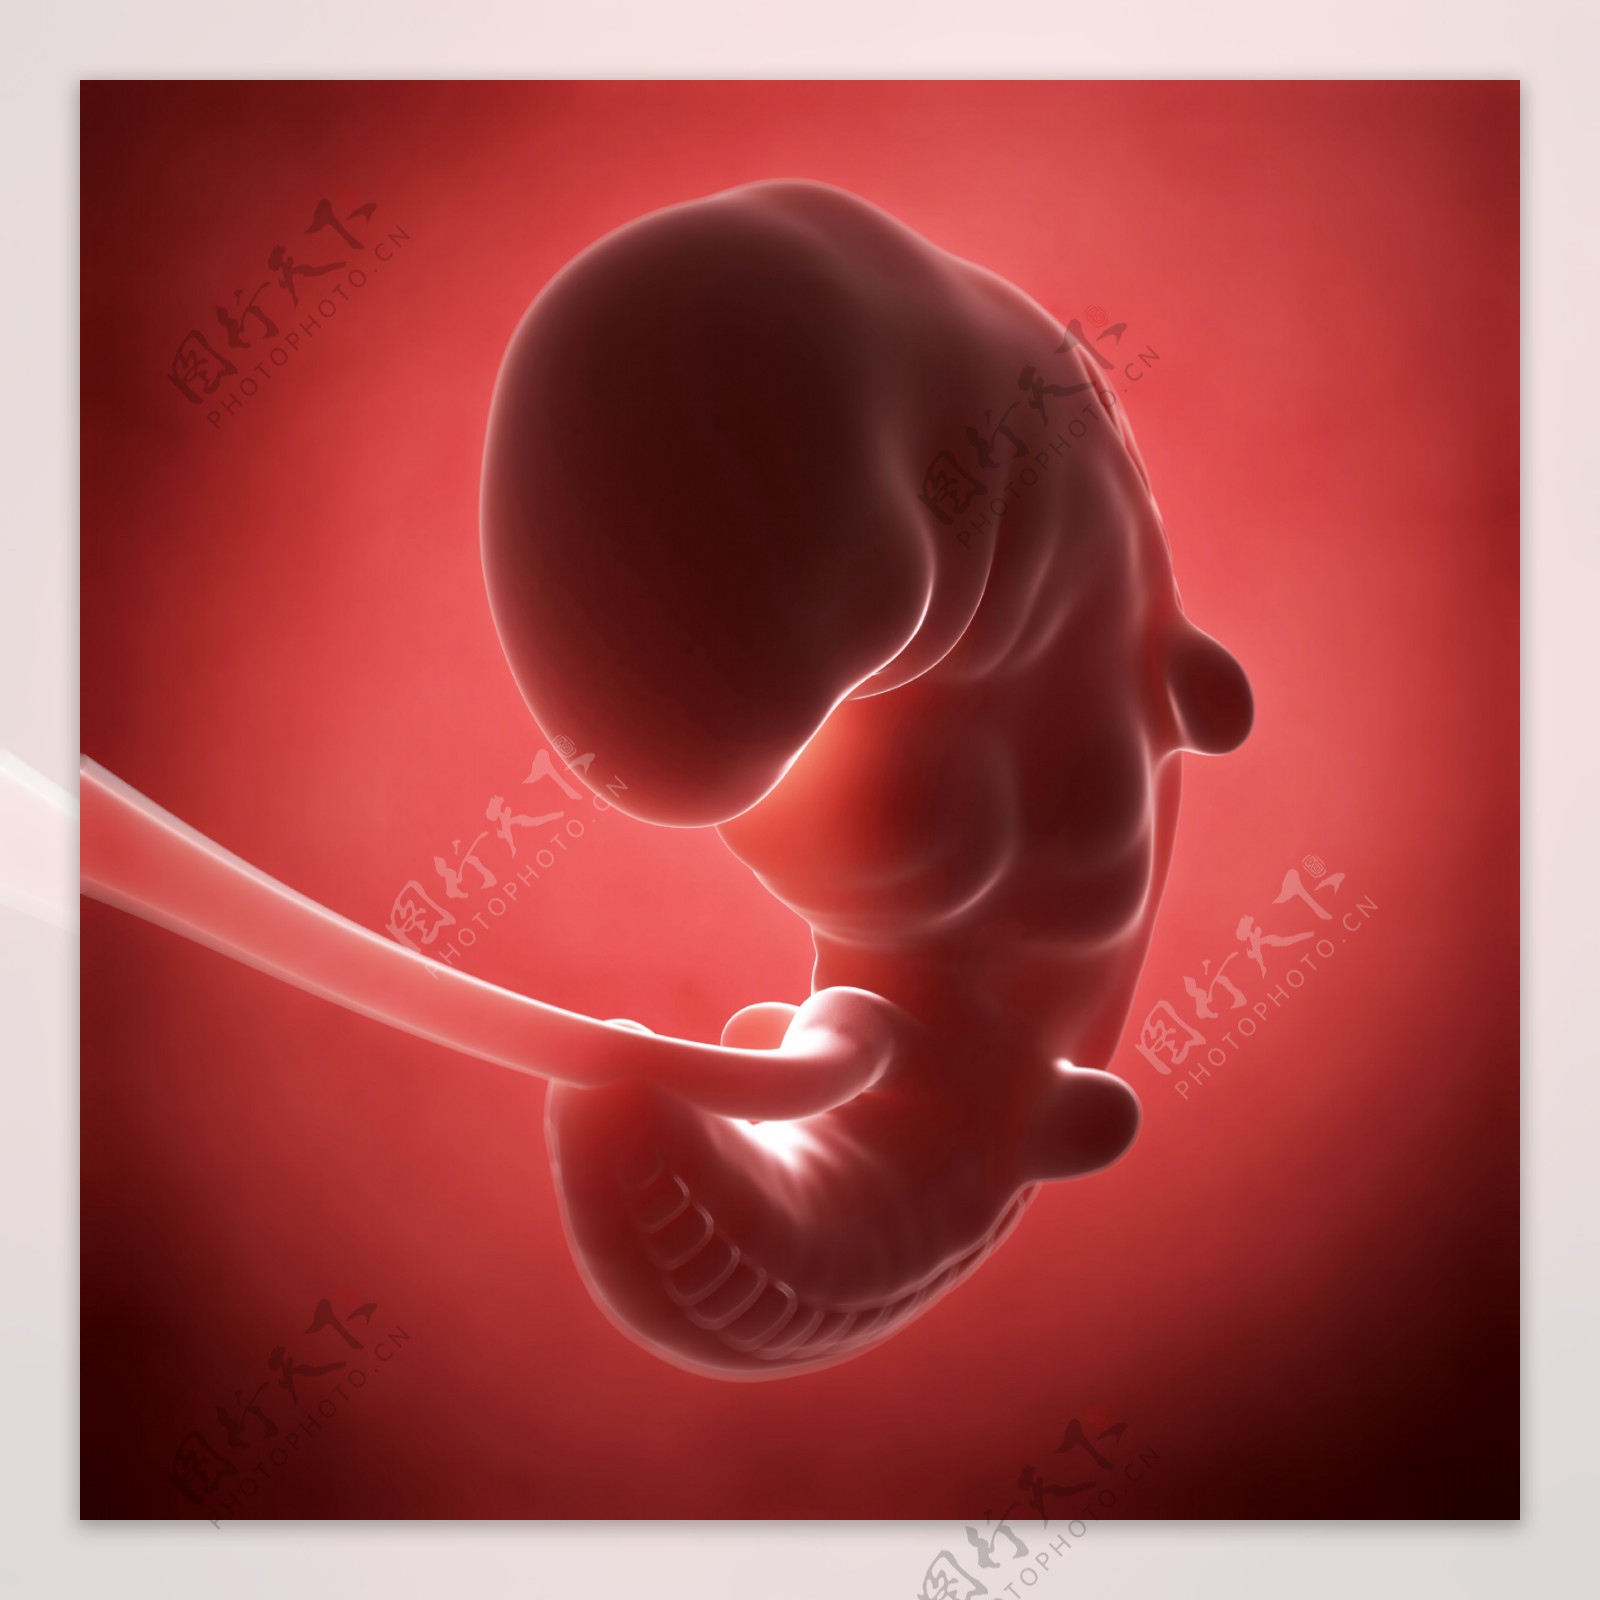 胎儿图片